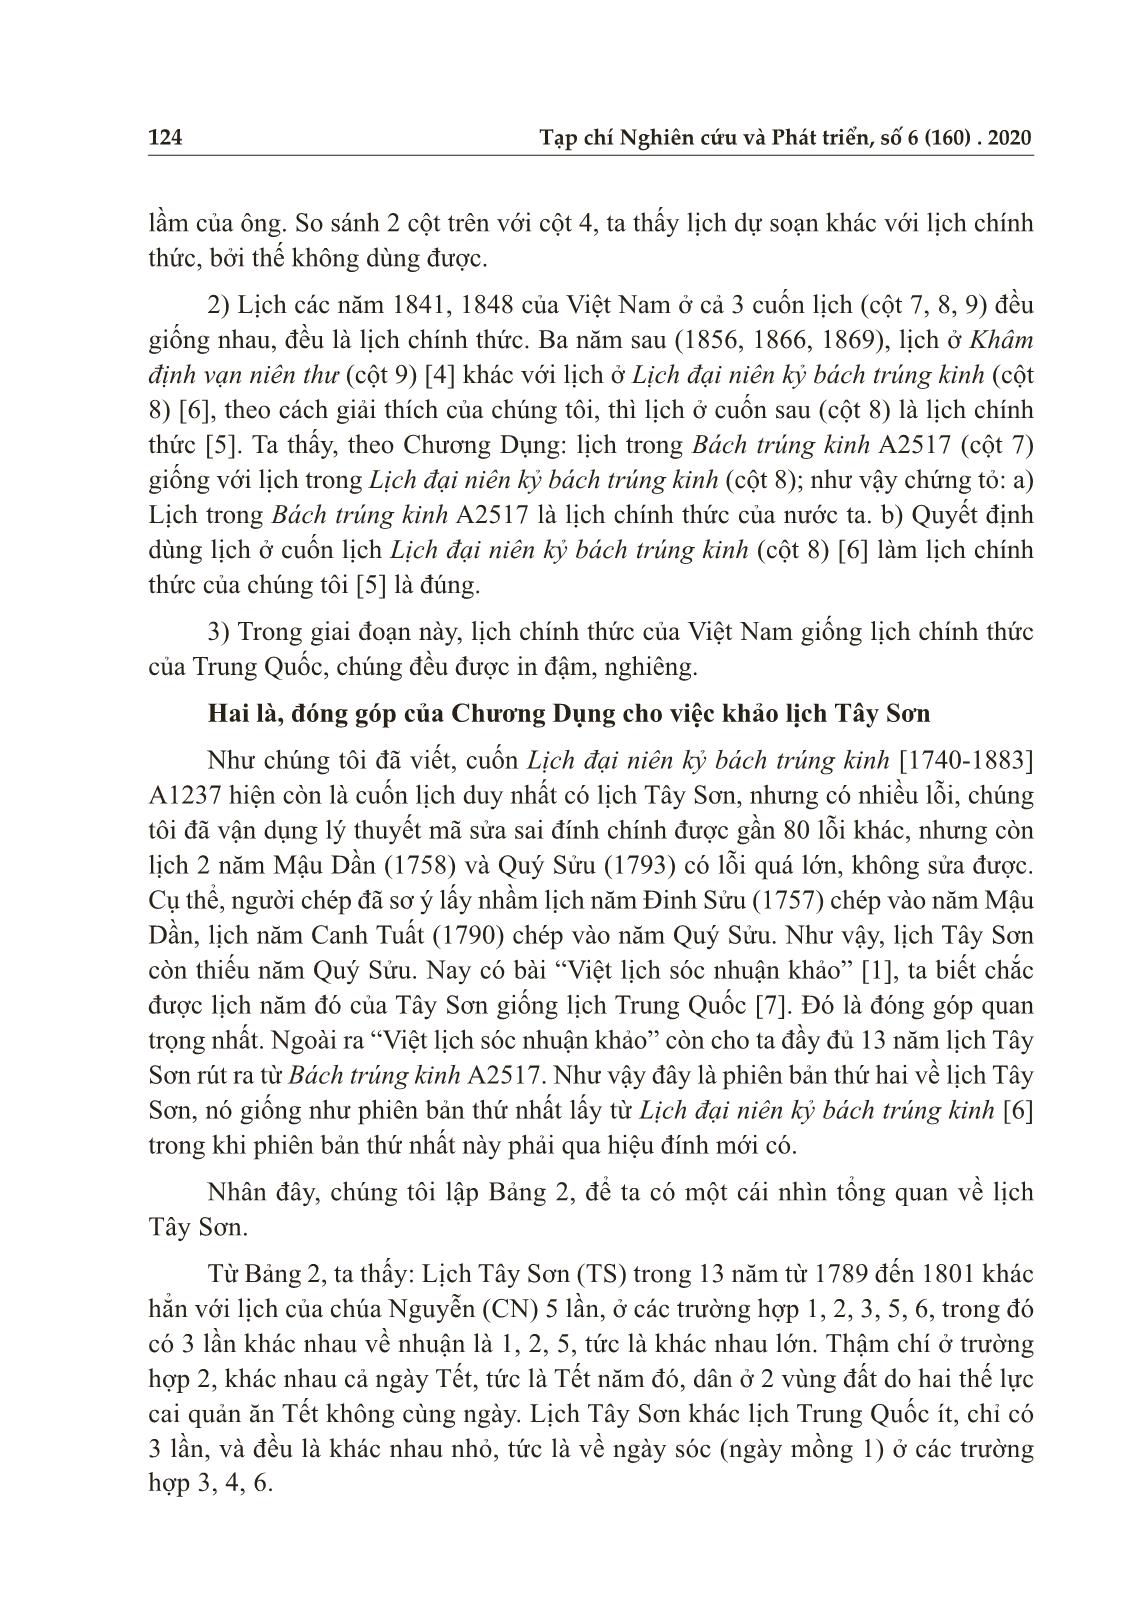 Đóng góp của Chương Dụng vào nghiên cứu lịch cổ Việt Nam trang 6